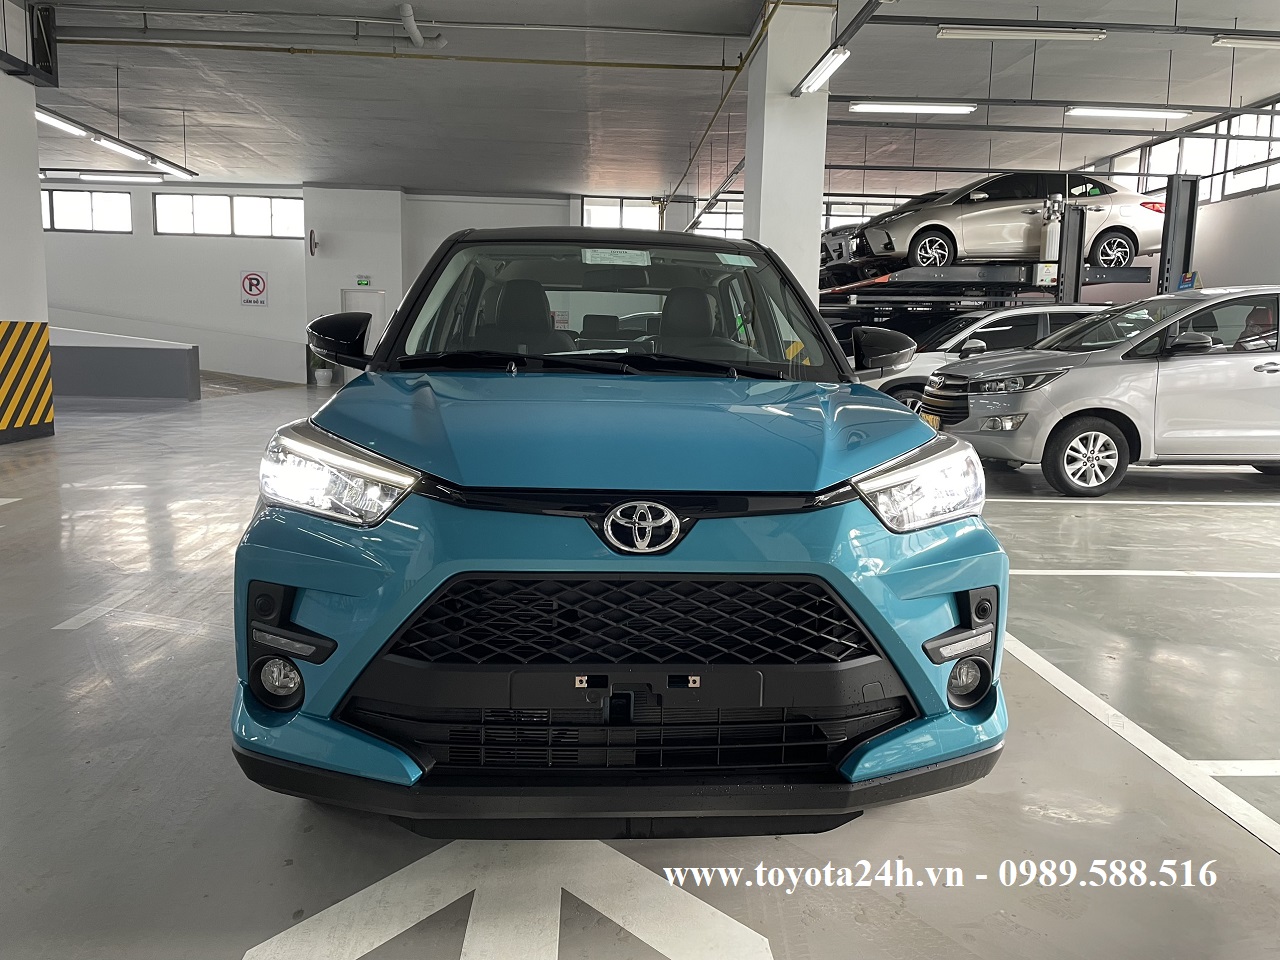 Toyota Raize 2022 Màu Xanh Nóc Đen Hình Ảnh Bảng Giá Xe Thông Số Kỹ Thuật Mới